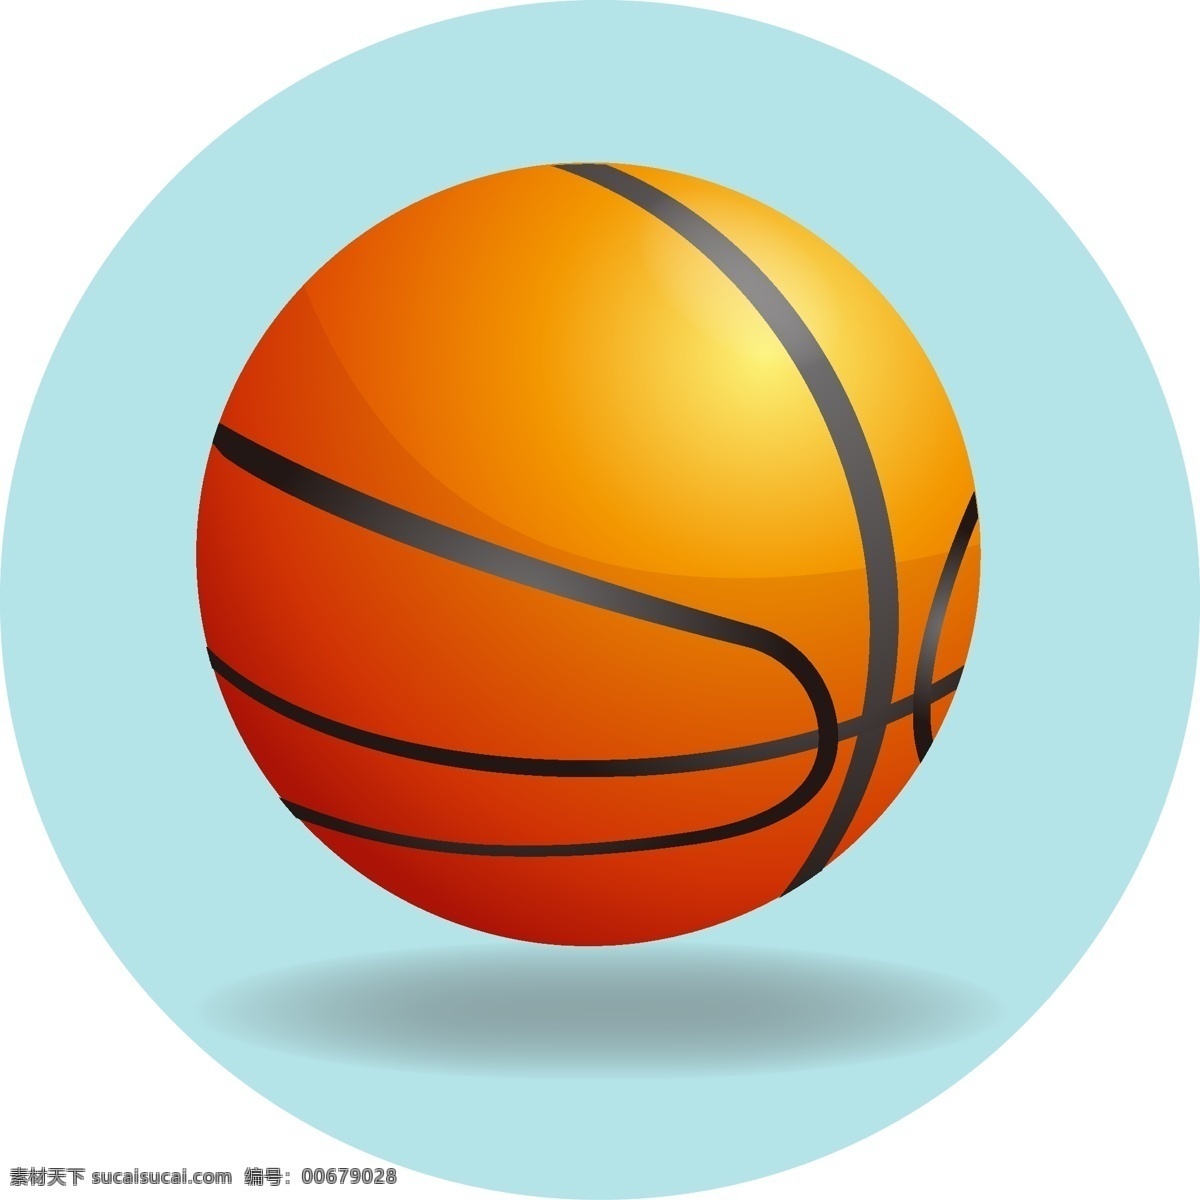 矢量 免 扣篮 球运动 投篮 体育 运动 运动会 篮球比赛 打篮球 篮筐 进球 手绘篮球 篮球海报 篮球运动